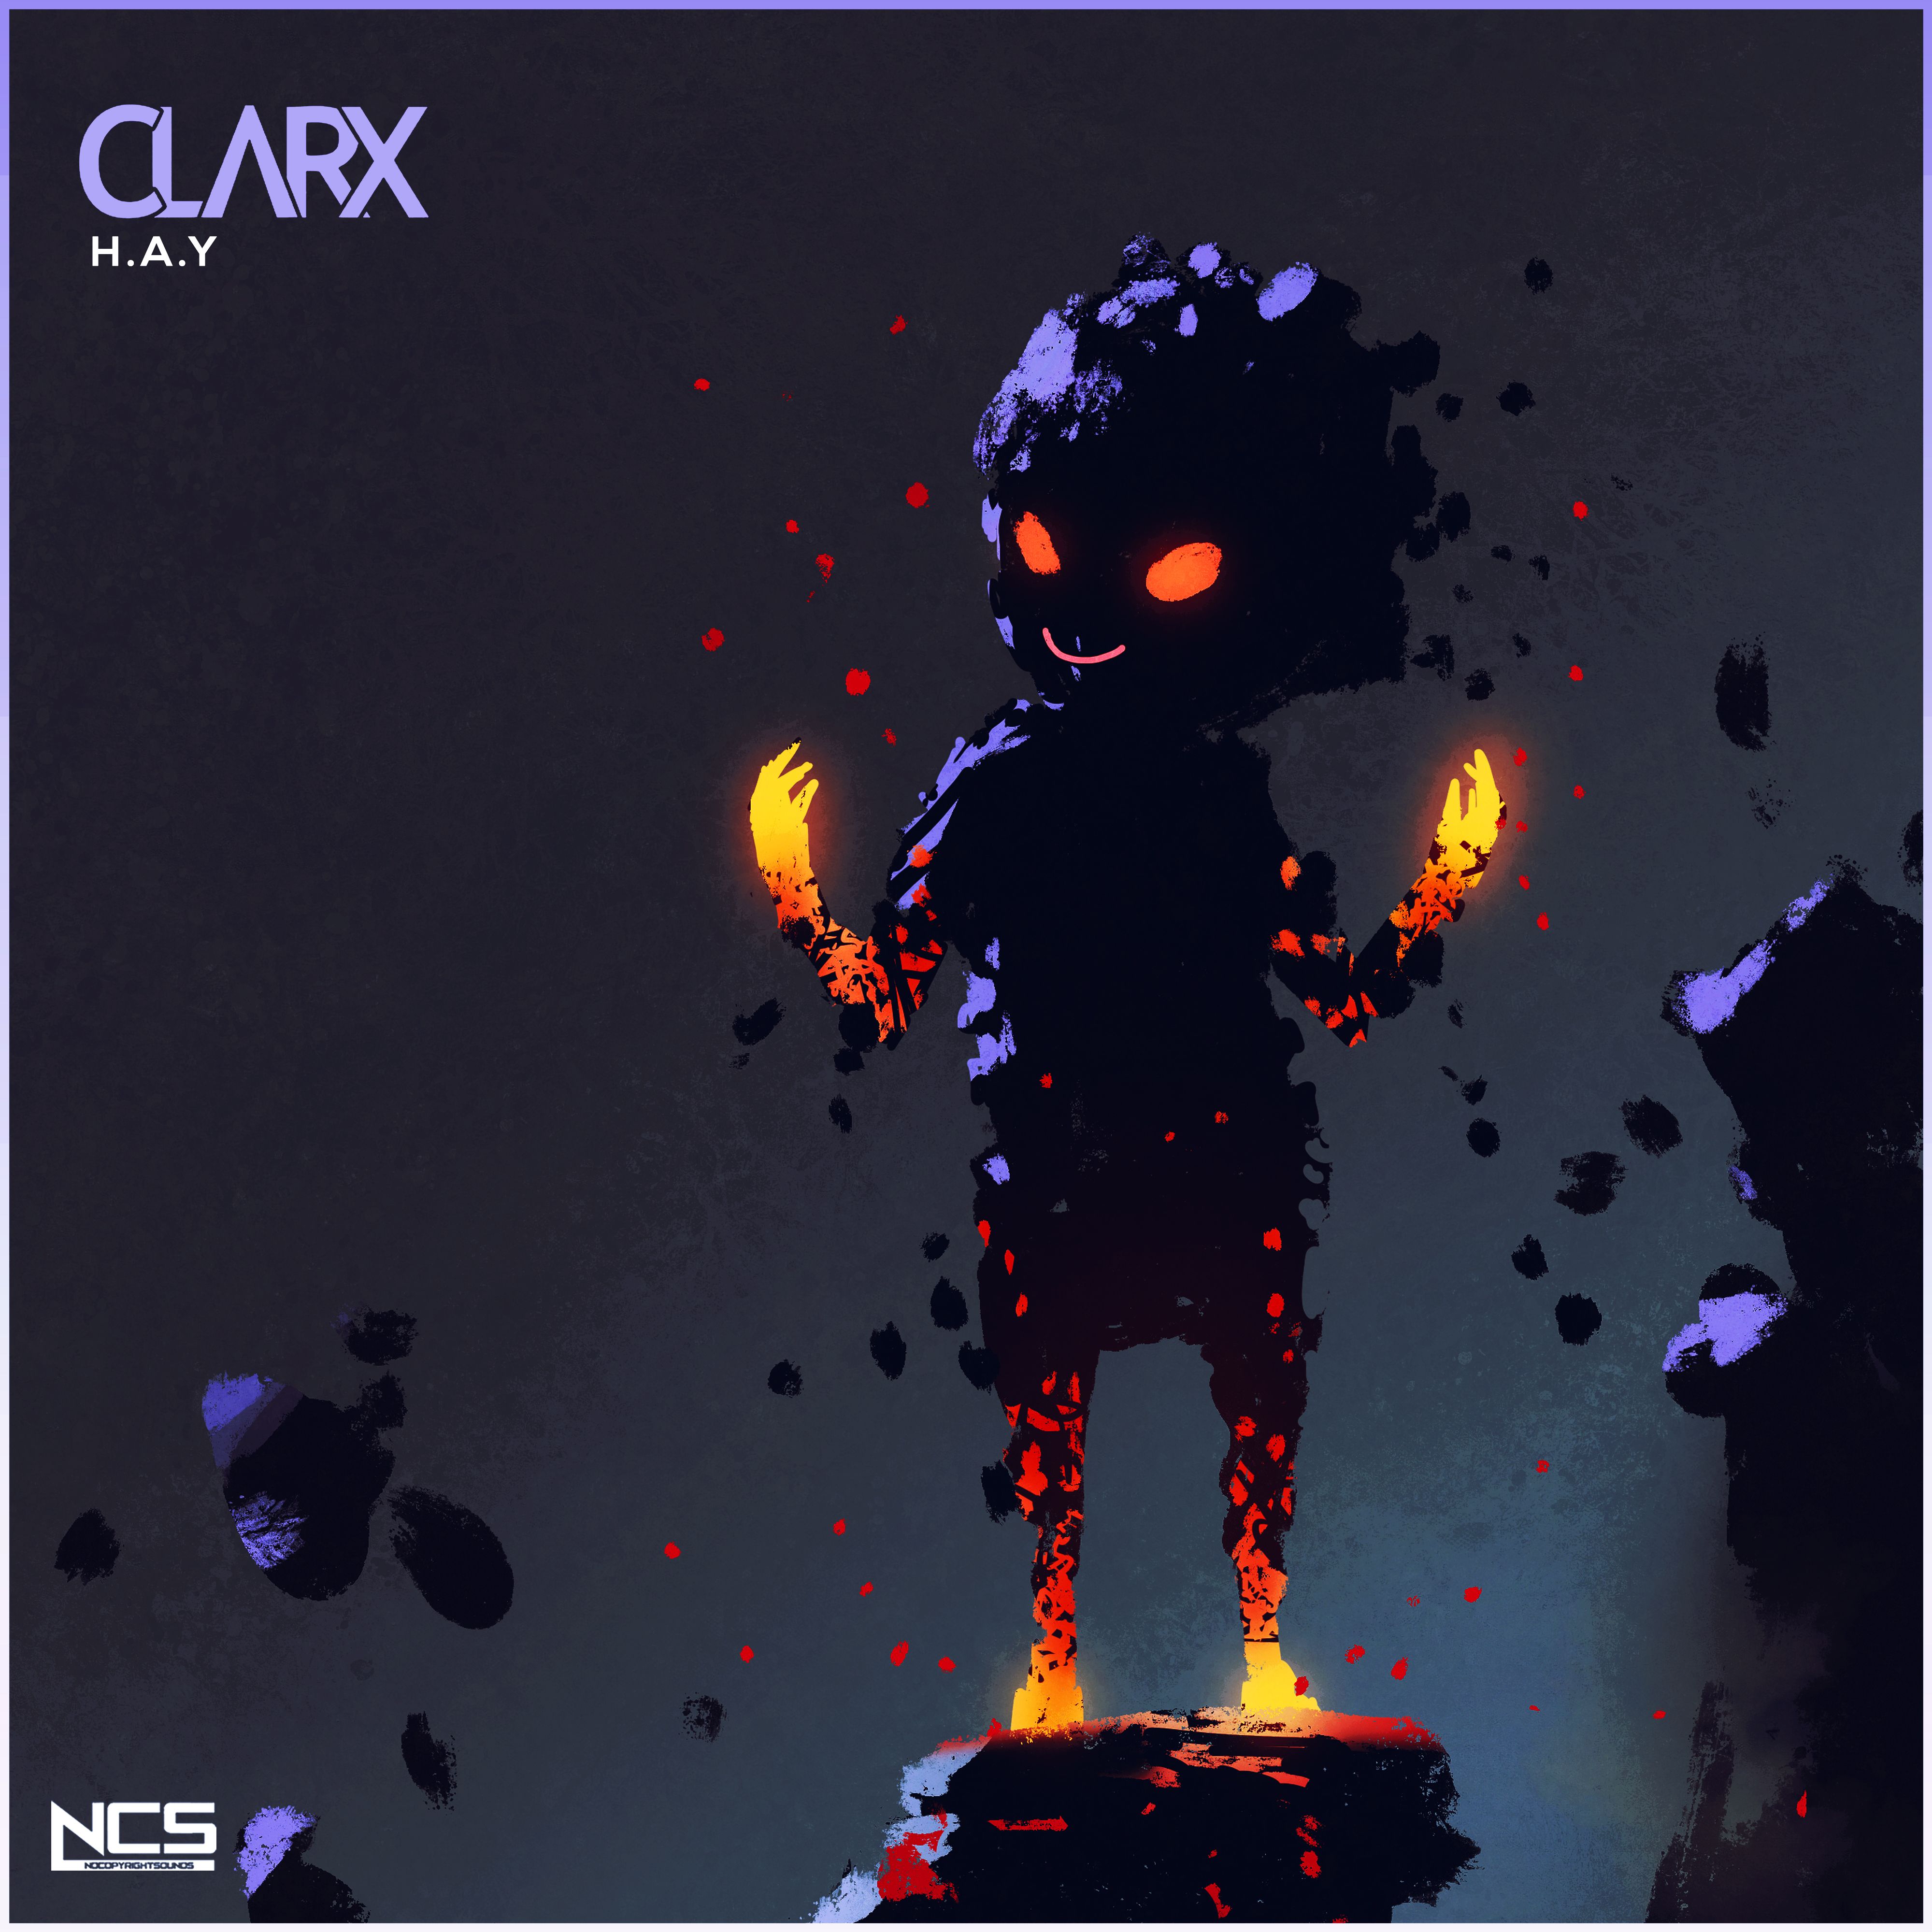 Скачать Clarx - H.A.Y [NCS Release]